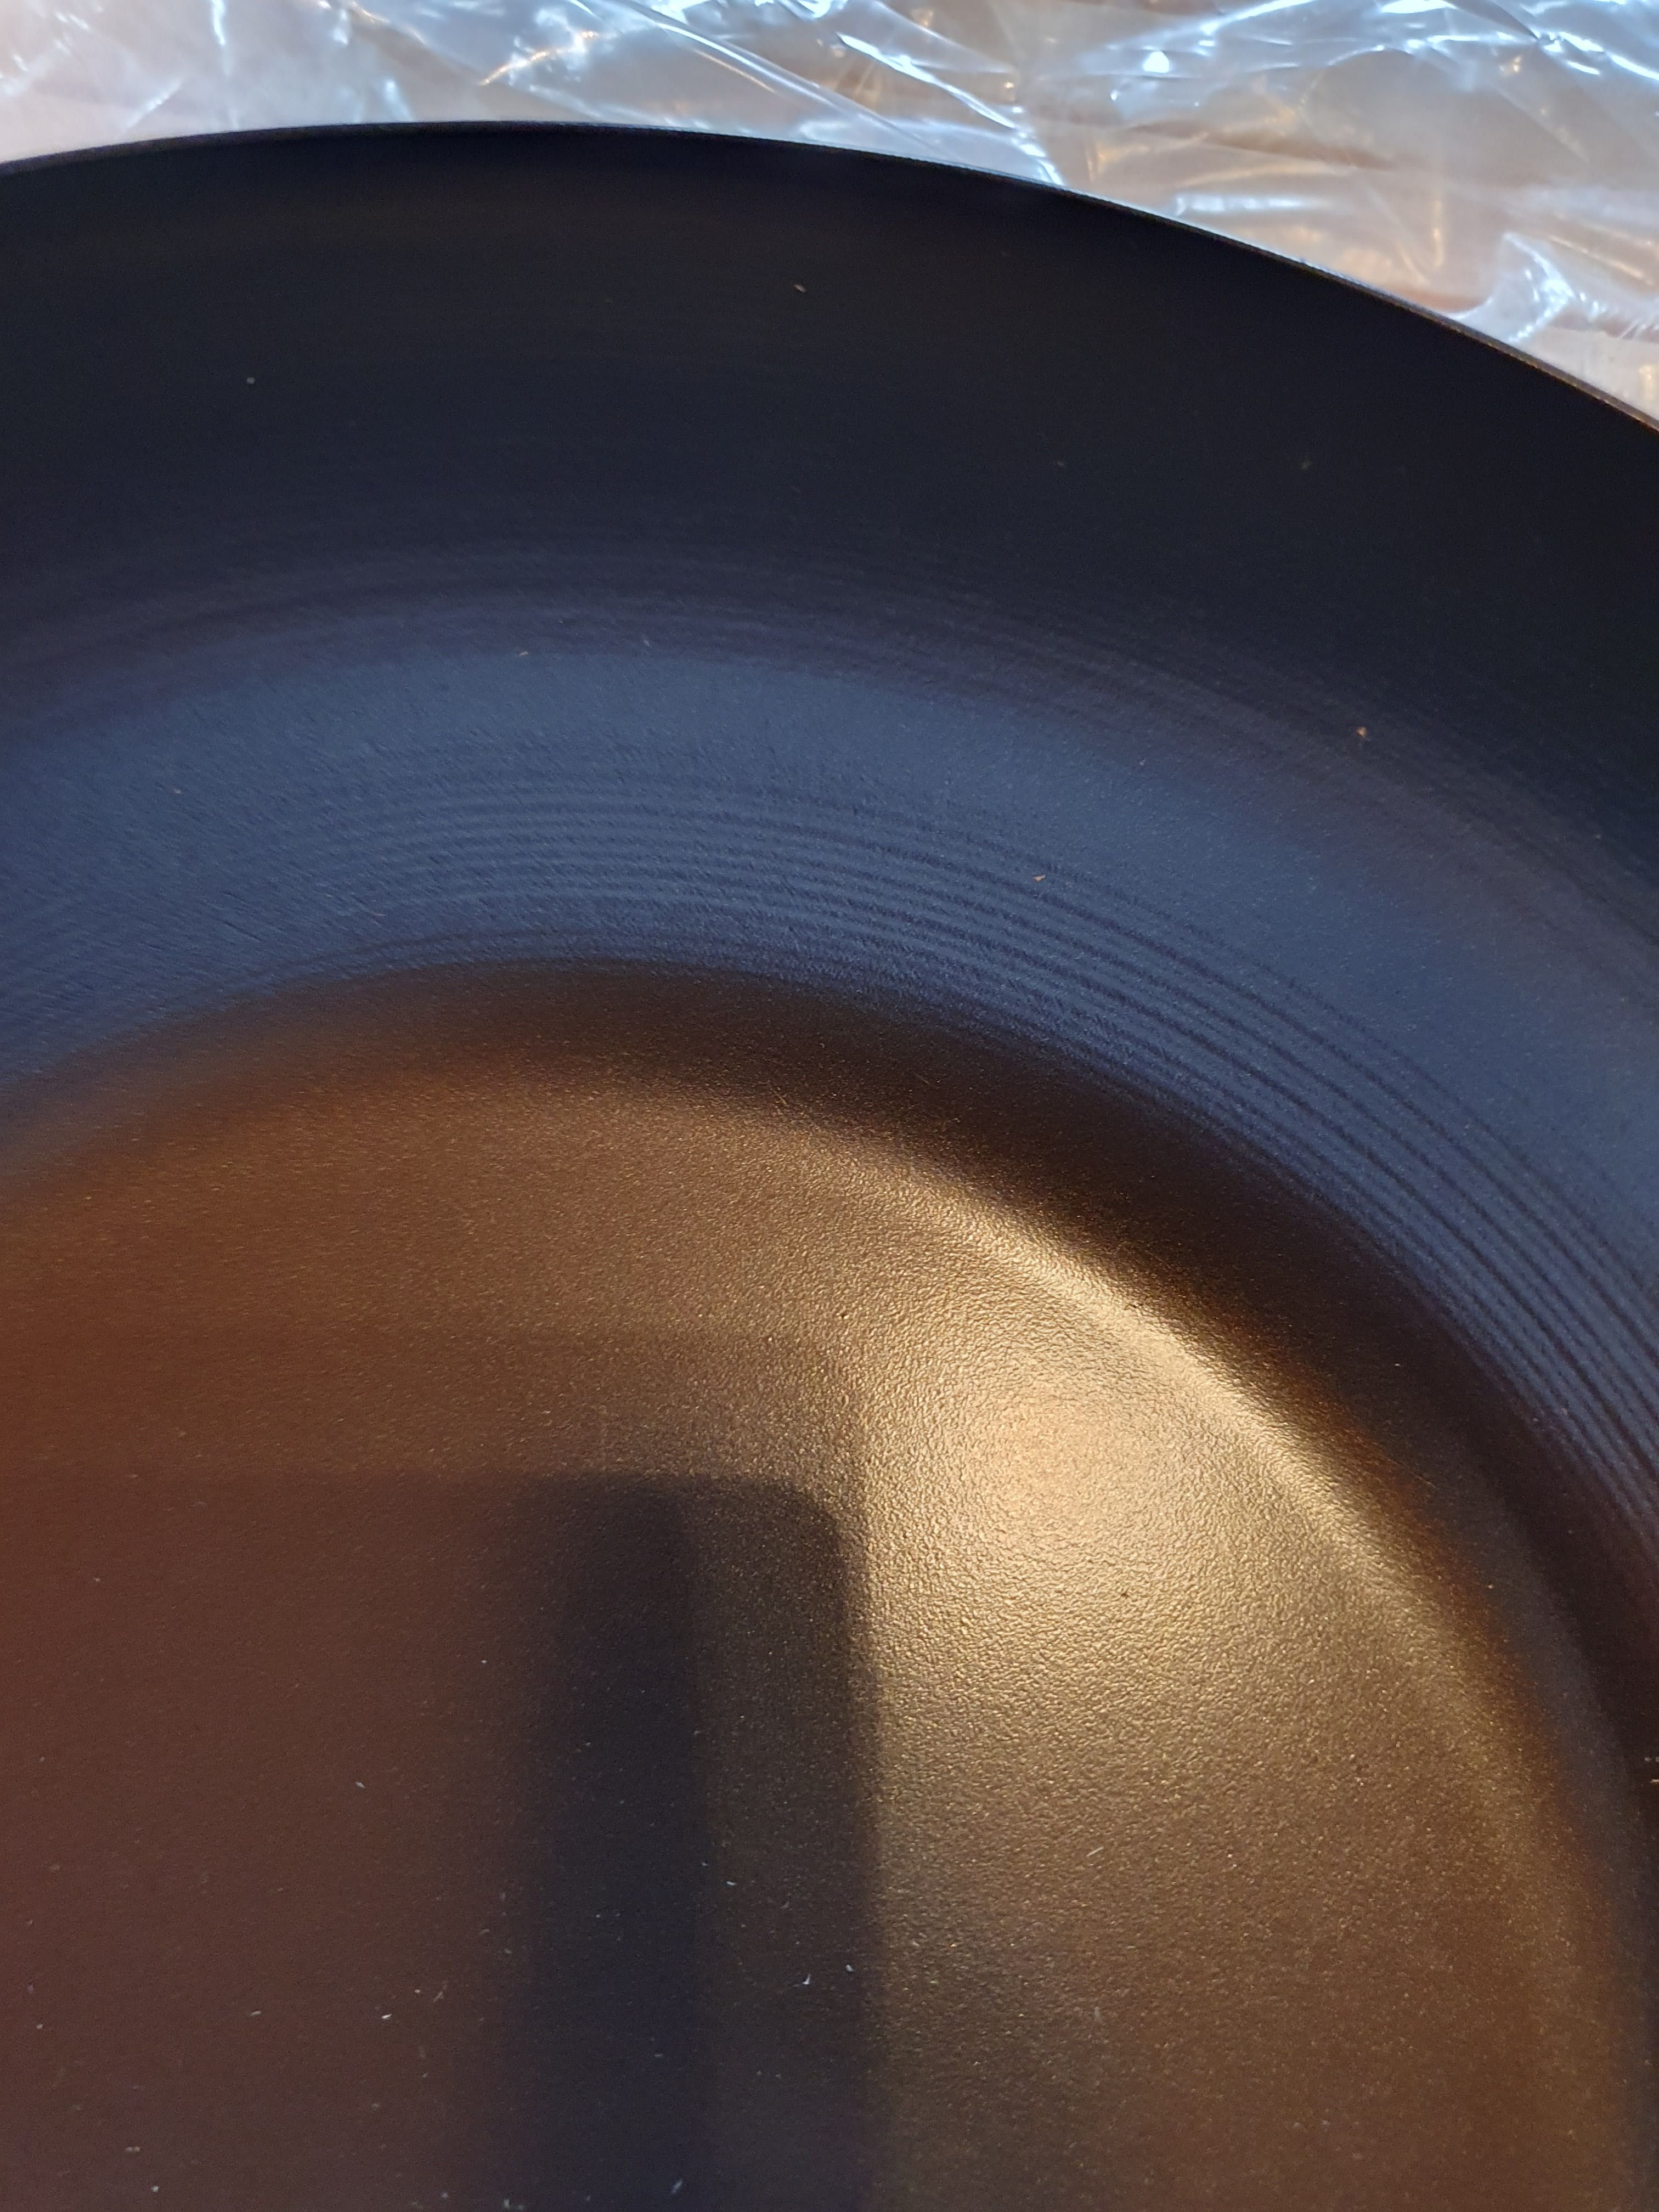 Patelnia wok do stir/fry